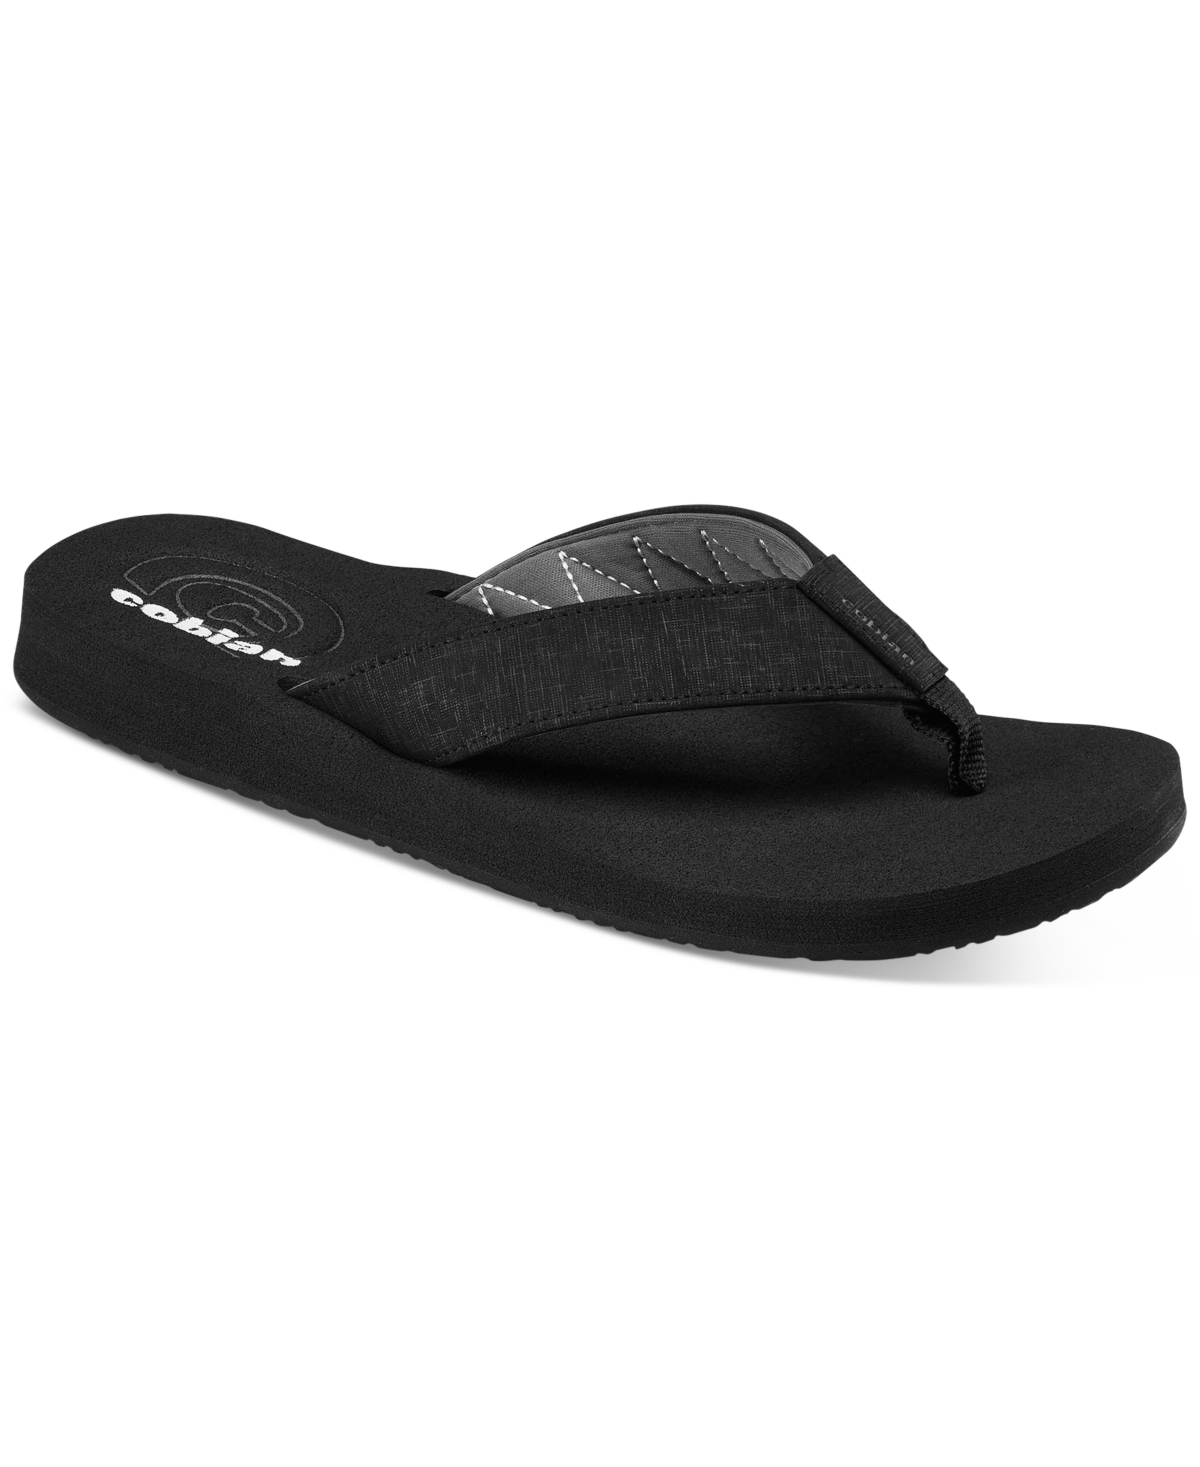 Men's Floater 2 Sandals - Cement